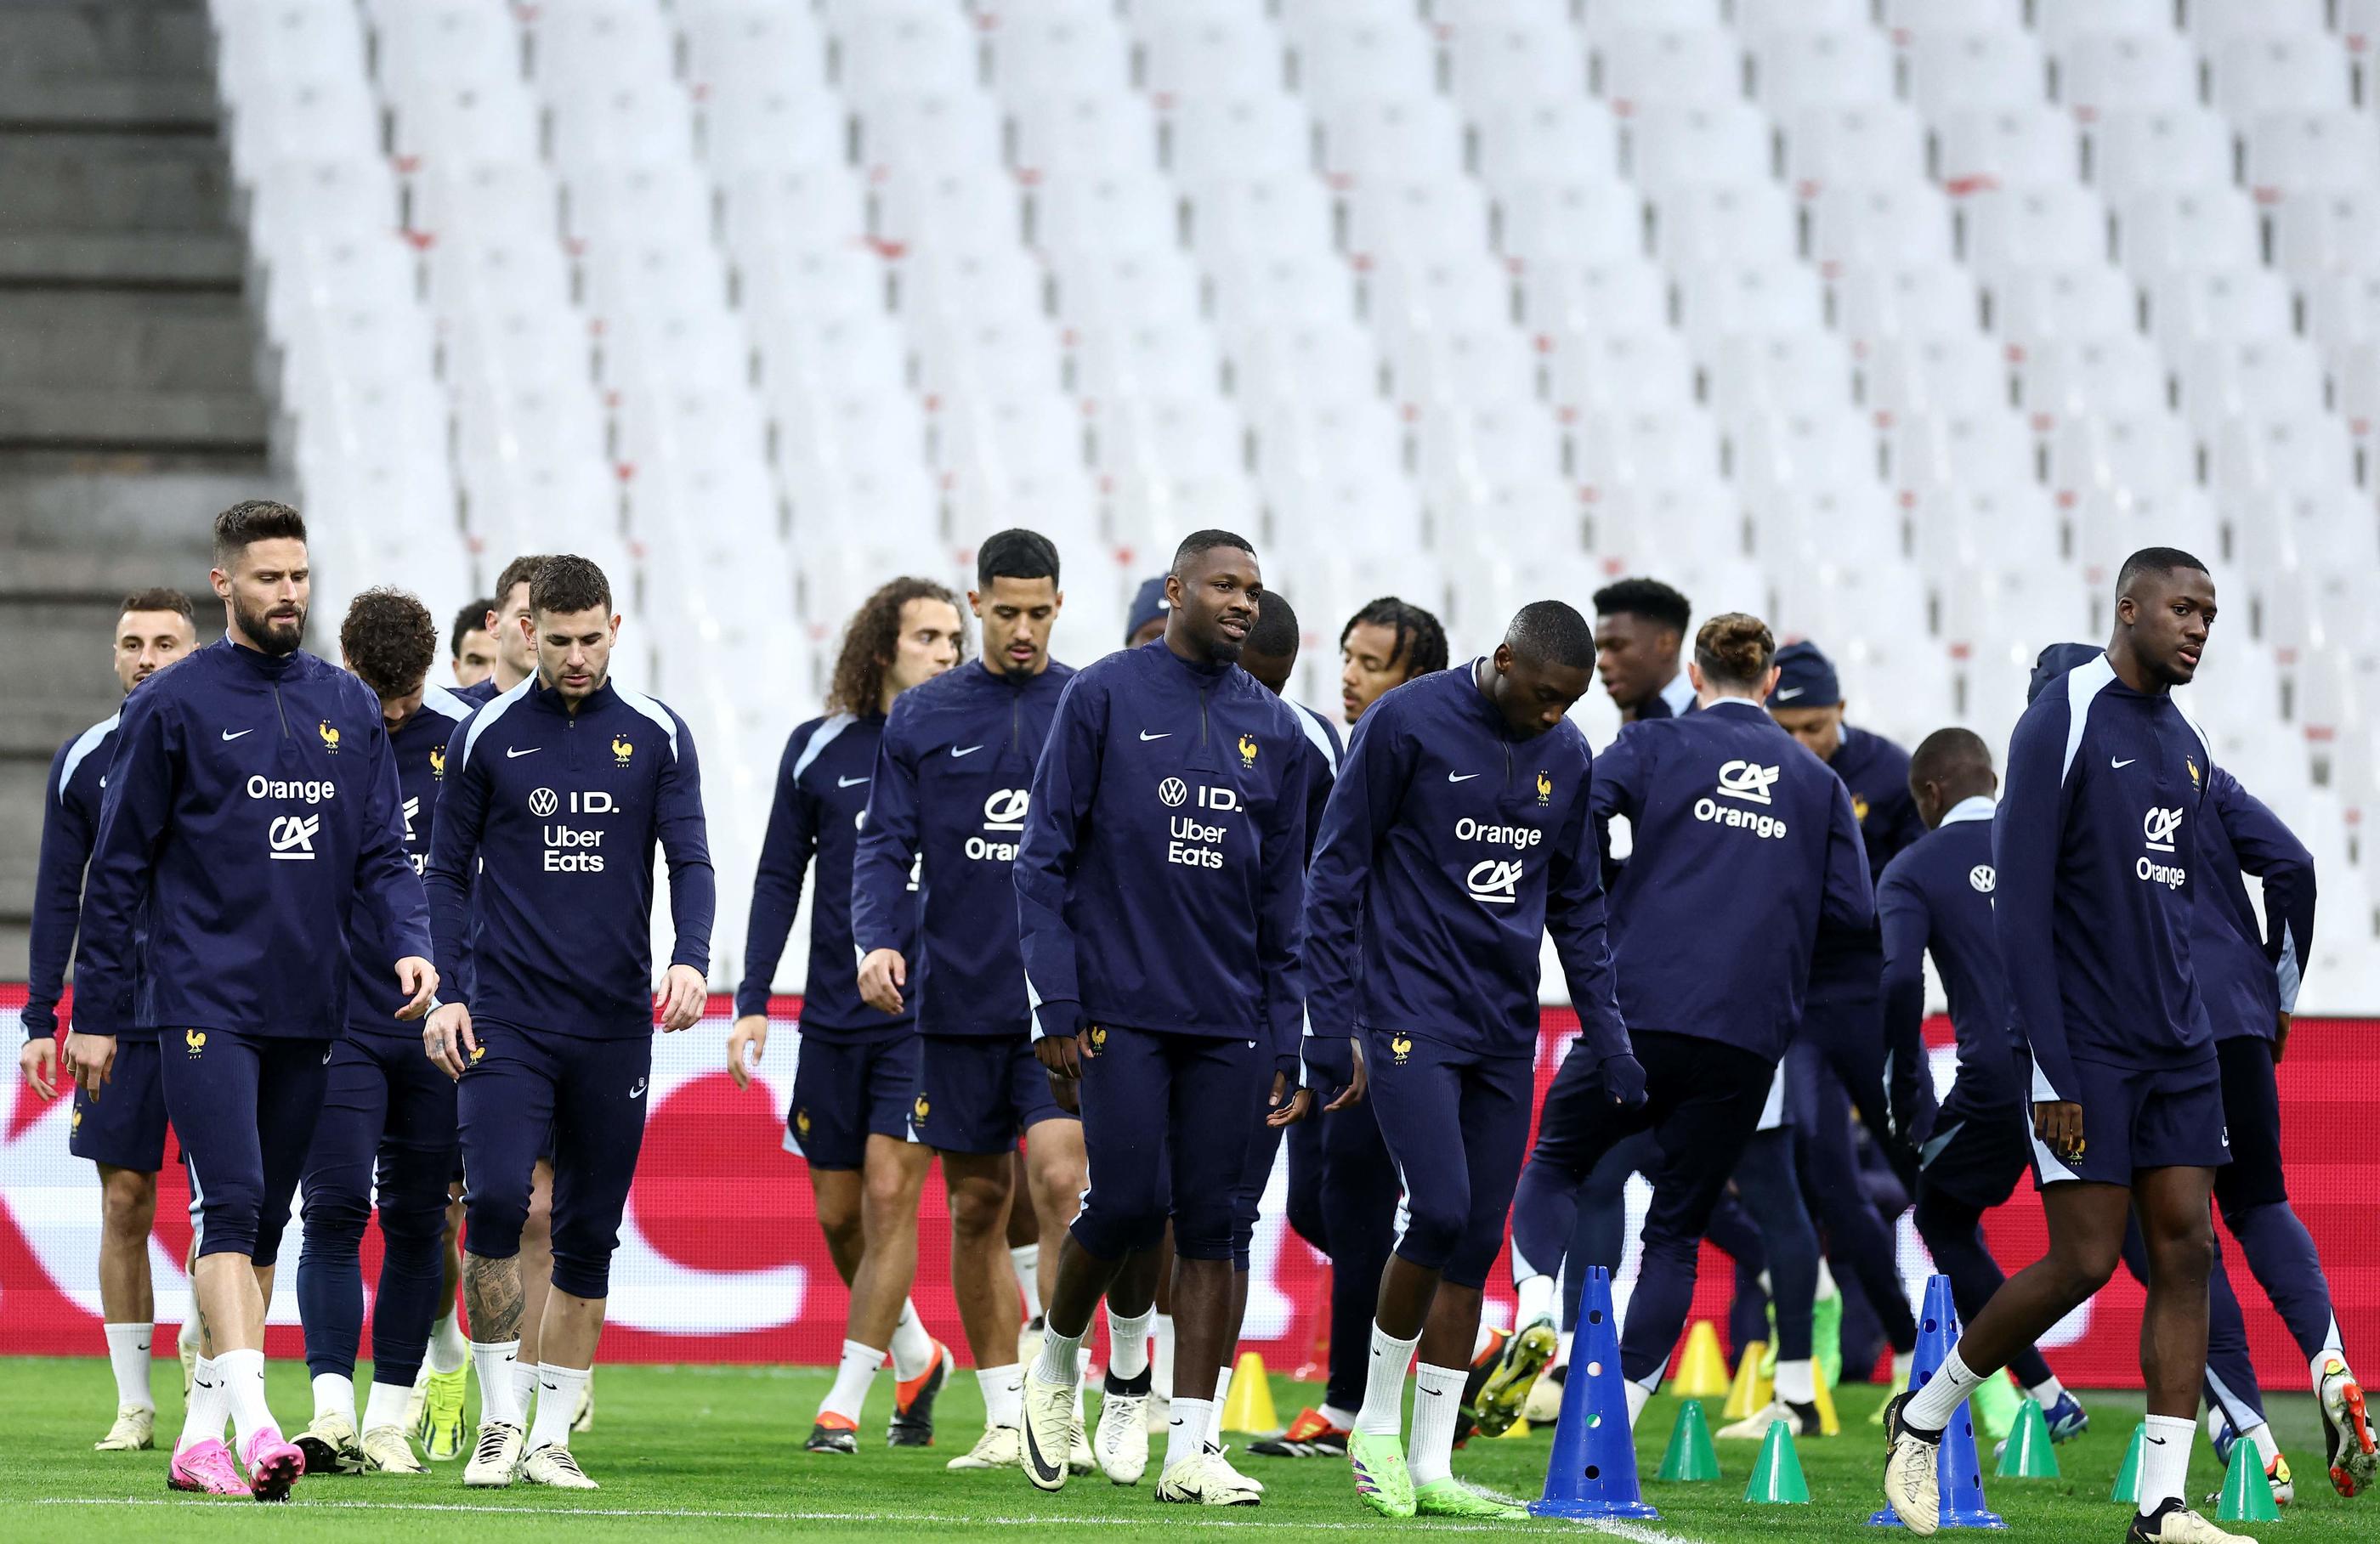 En remaniant largement son équipe, ici à l'entraînement au Vélodrome ce lundi, Didier Deschamps va permettre à certains joueurs de se mettre en valeur avant l'Euro en Allemagne. AFP/Franck Fife